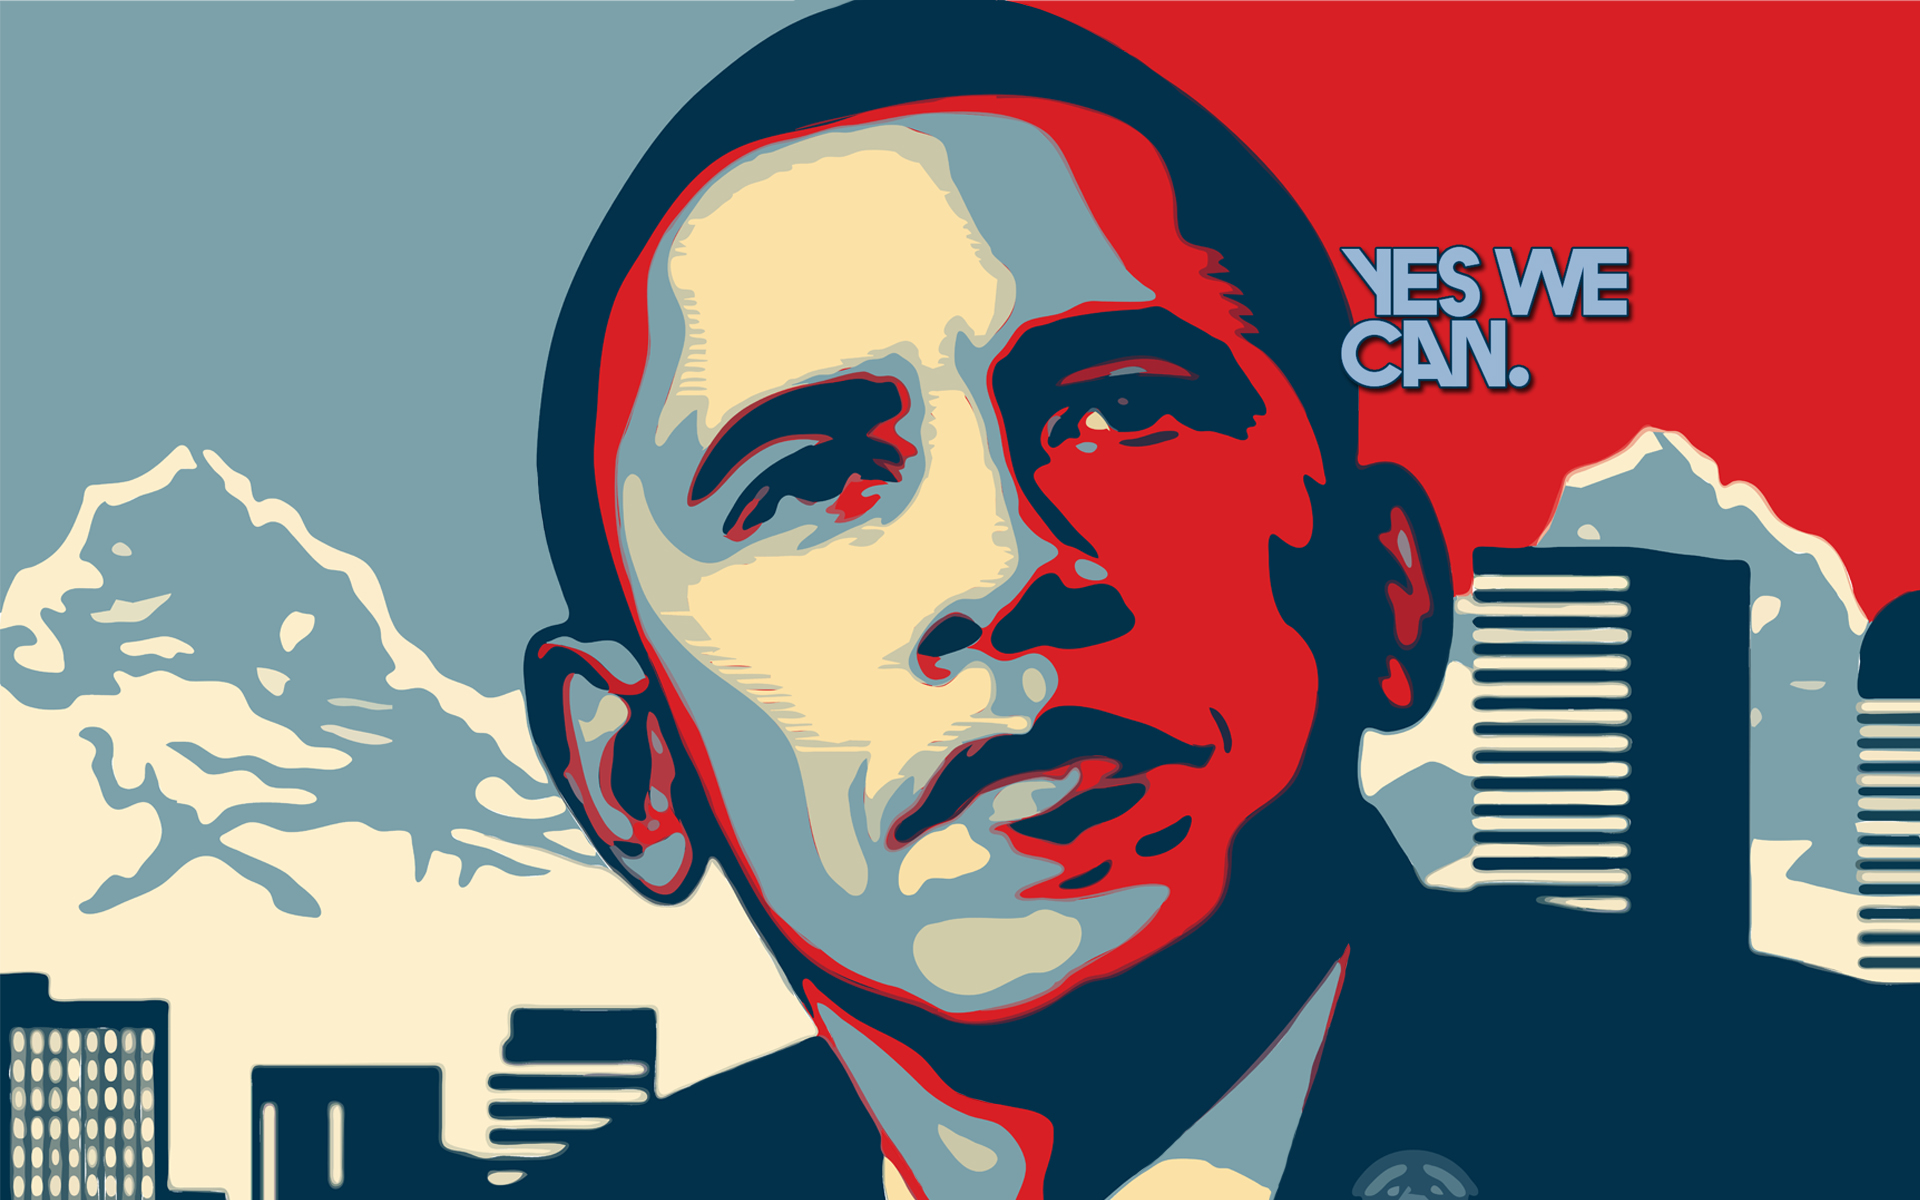 Obama Wallpaper Imagebank Biz